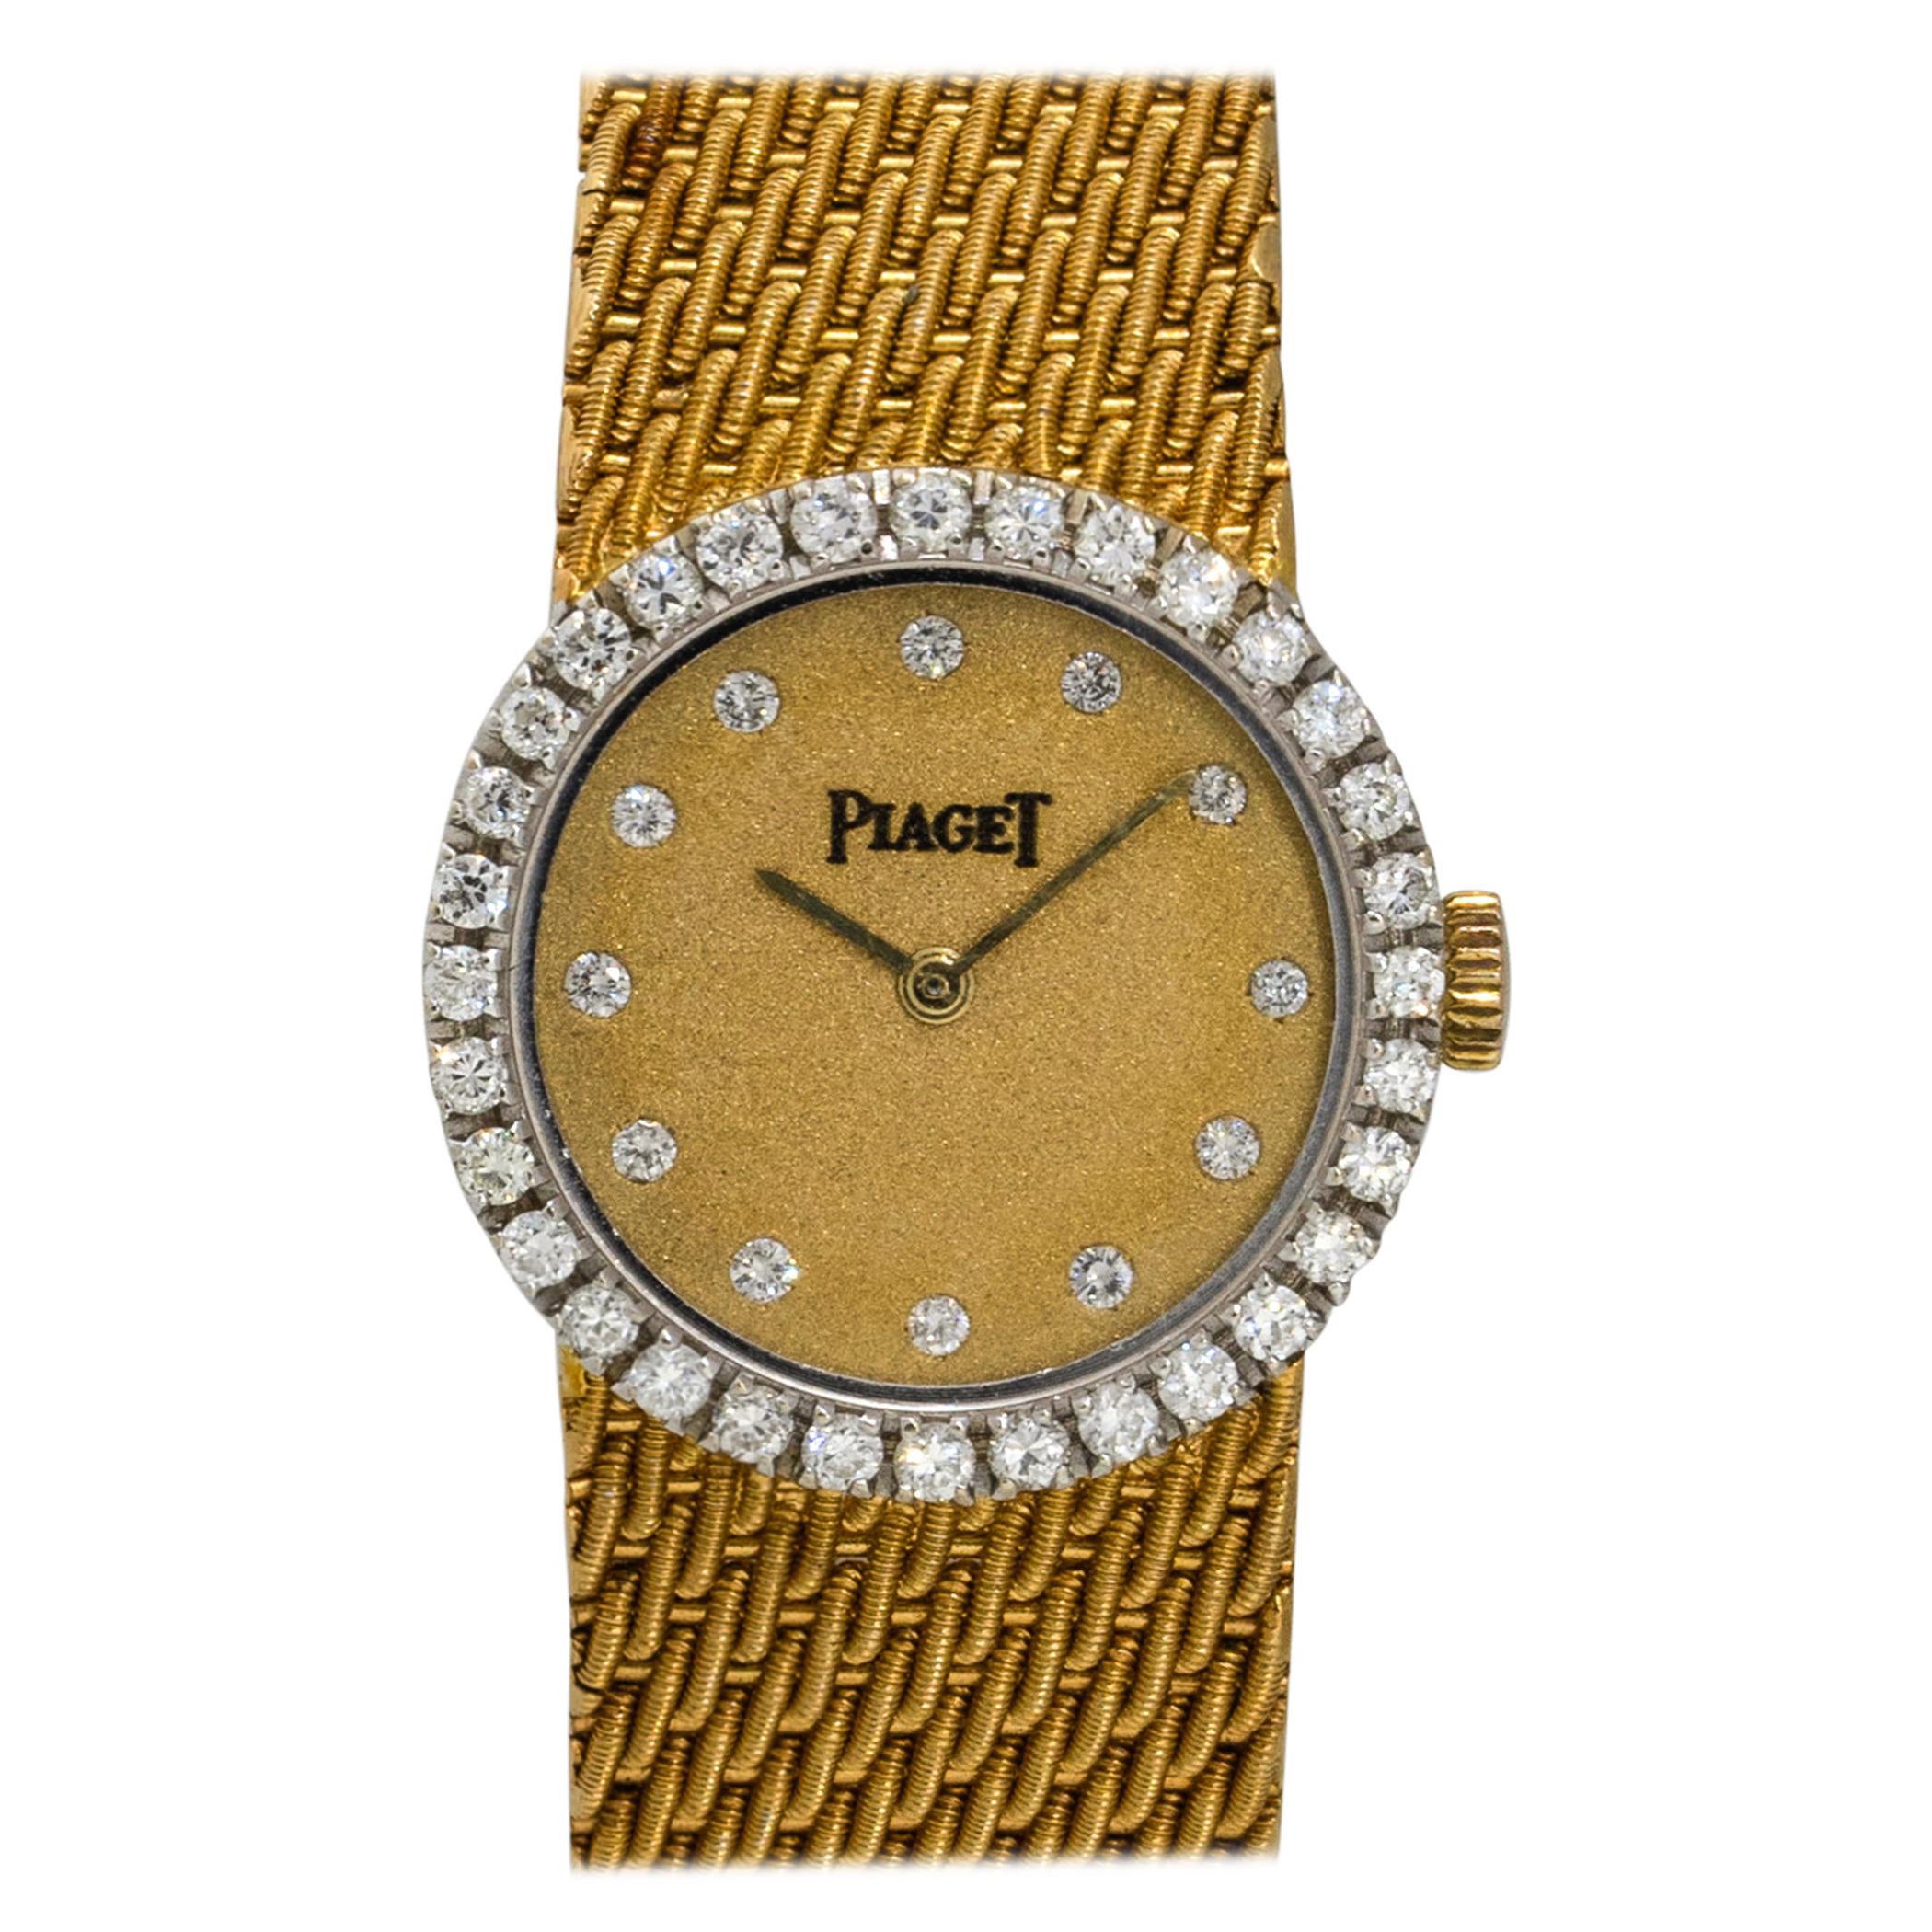 Piaget 6926 18k Yellow Gold Diamond Ladies Vintage Watch